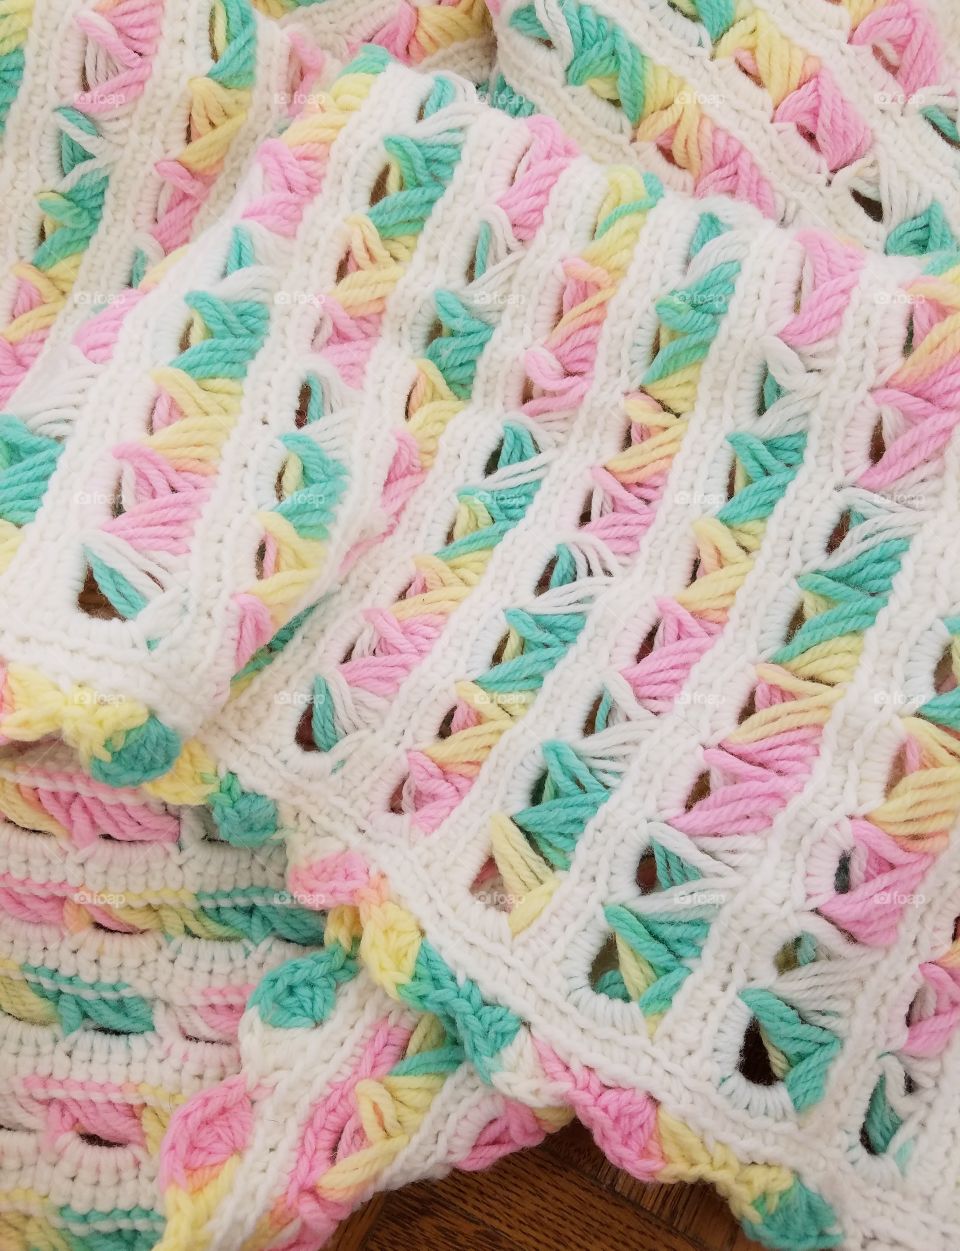 Handmade crochet baby blanket